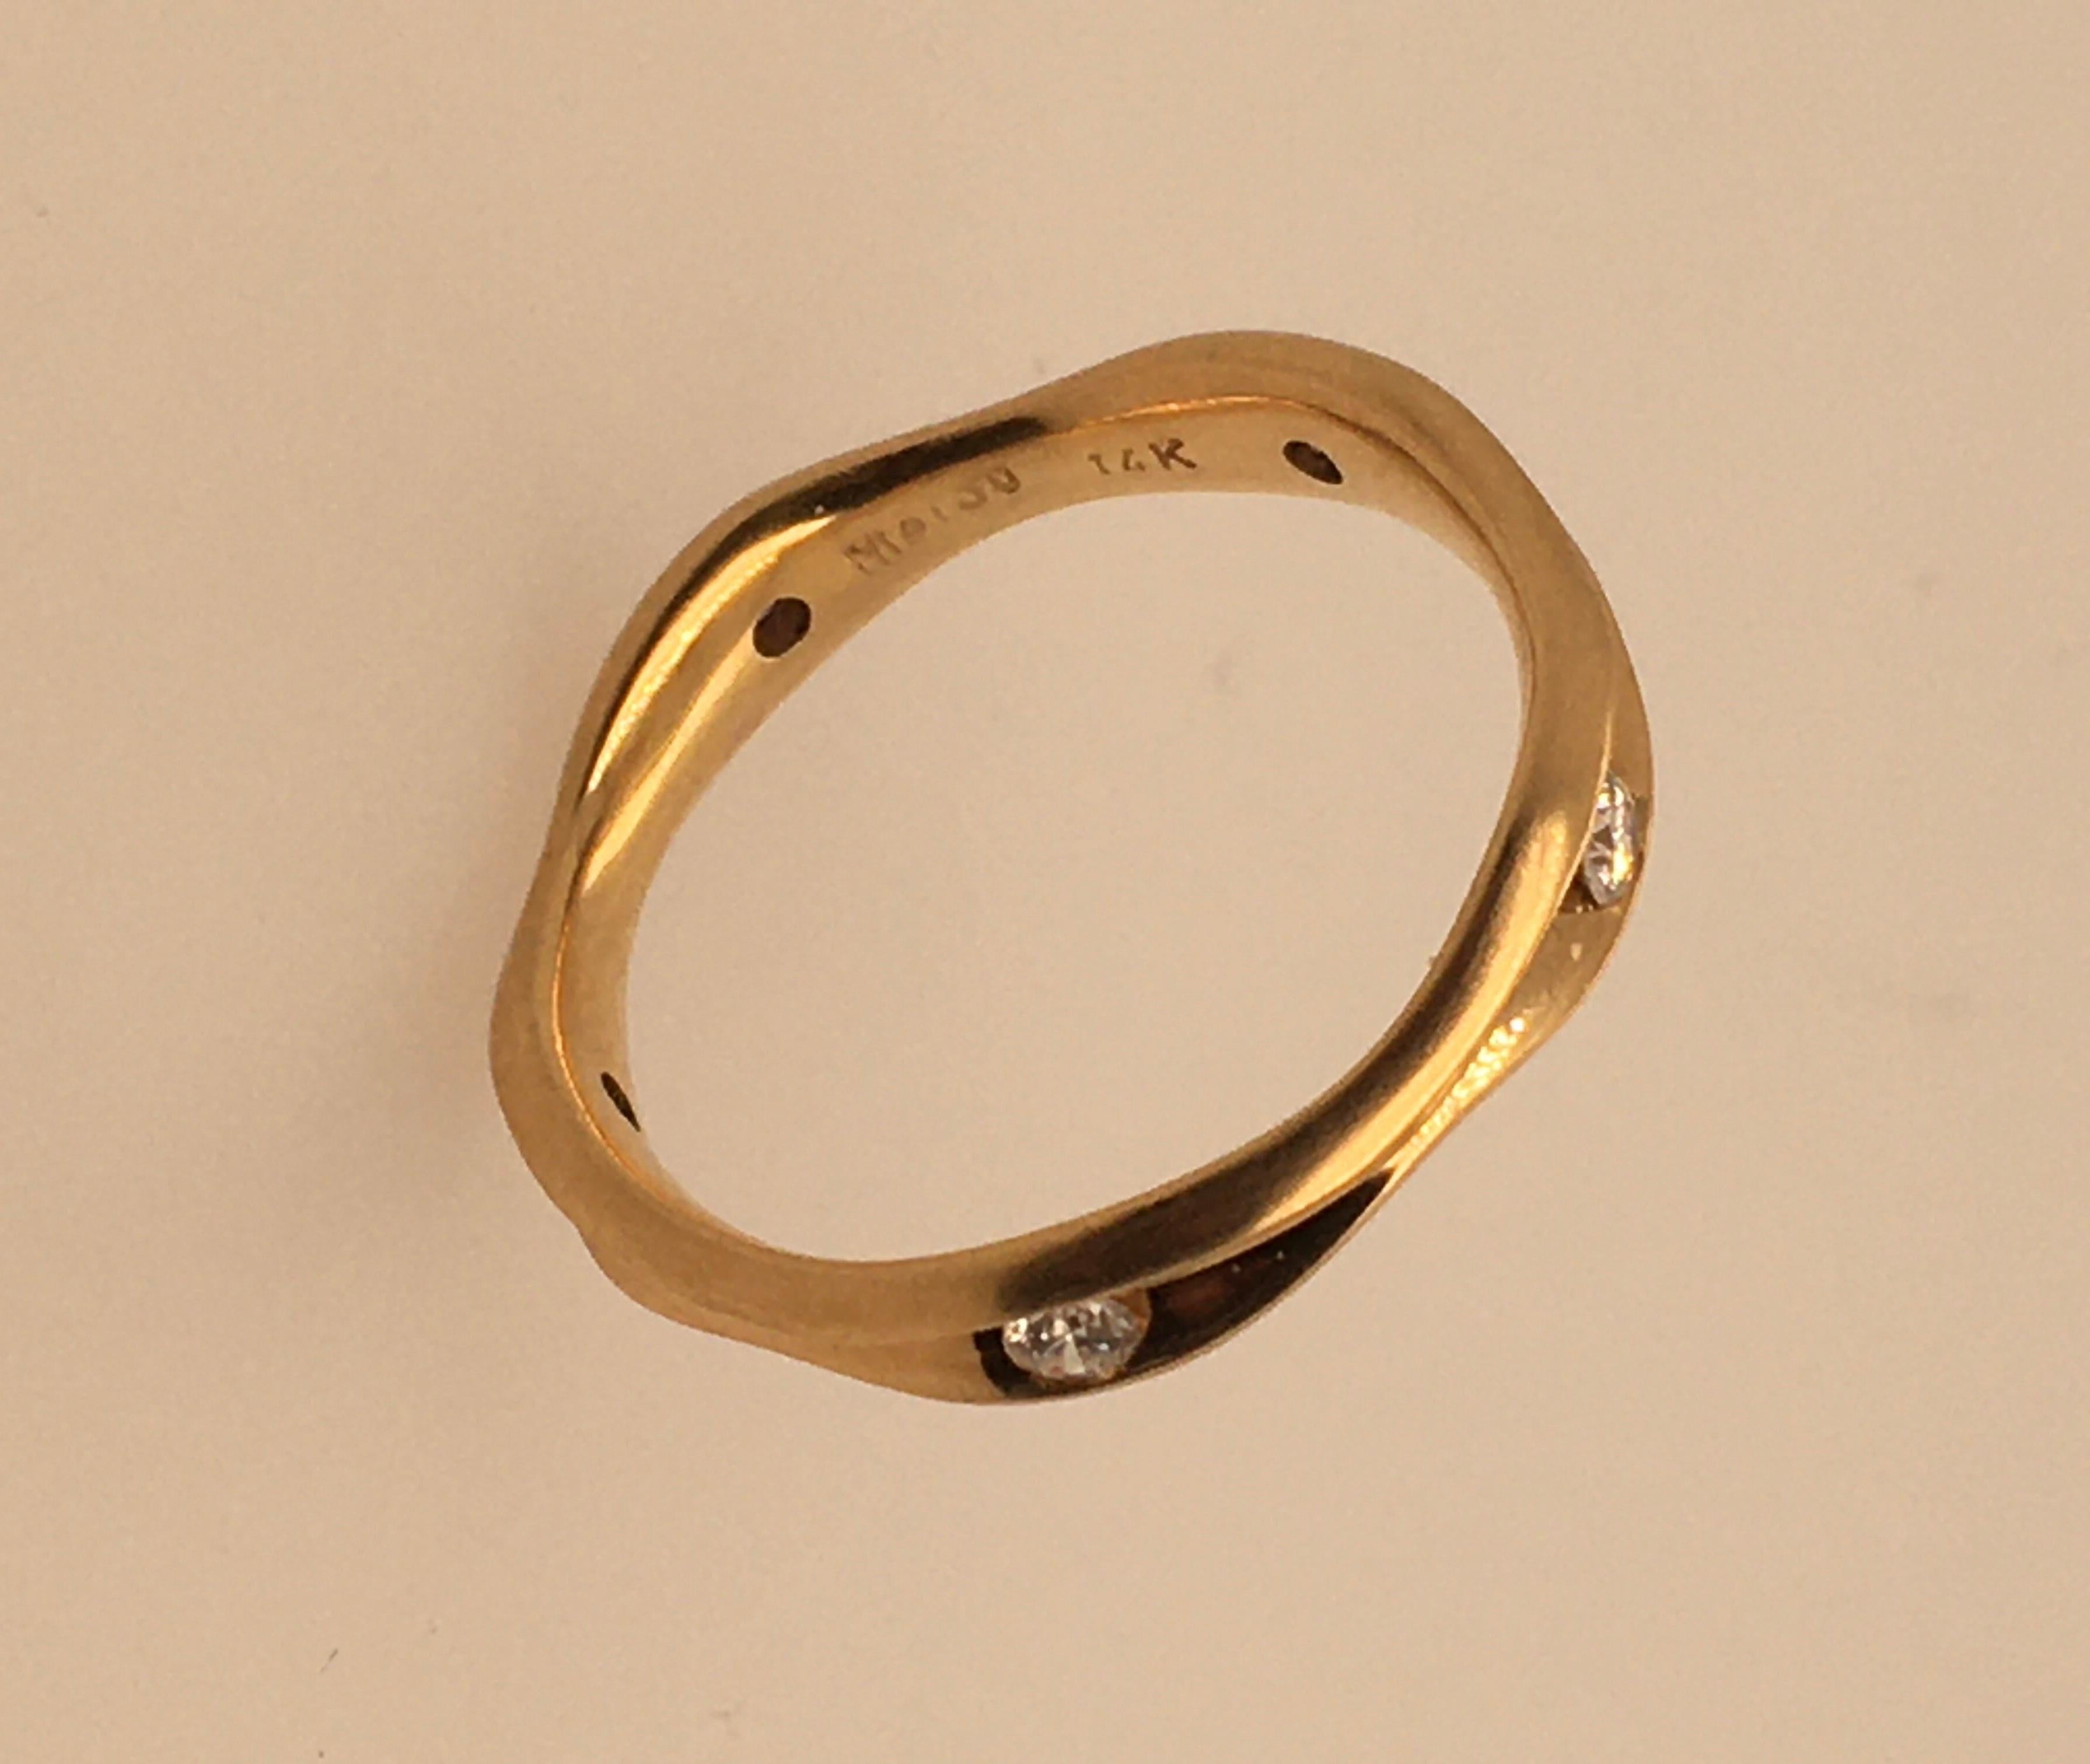 Ein wunderschöner, gewellter Ring aus satiniertem 14K-Gelbgold mit 5 Diamanten in einer Kanalfassung in gleichem Abstand um das Band.   Jeder Stein ist 045 pts.  / TCW 22,5 Pkt.  Der Aufdruck des Designers auf der Innenseite lautet 